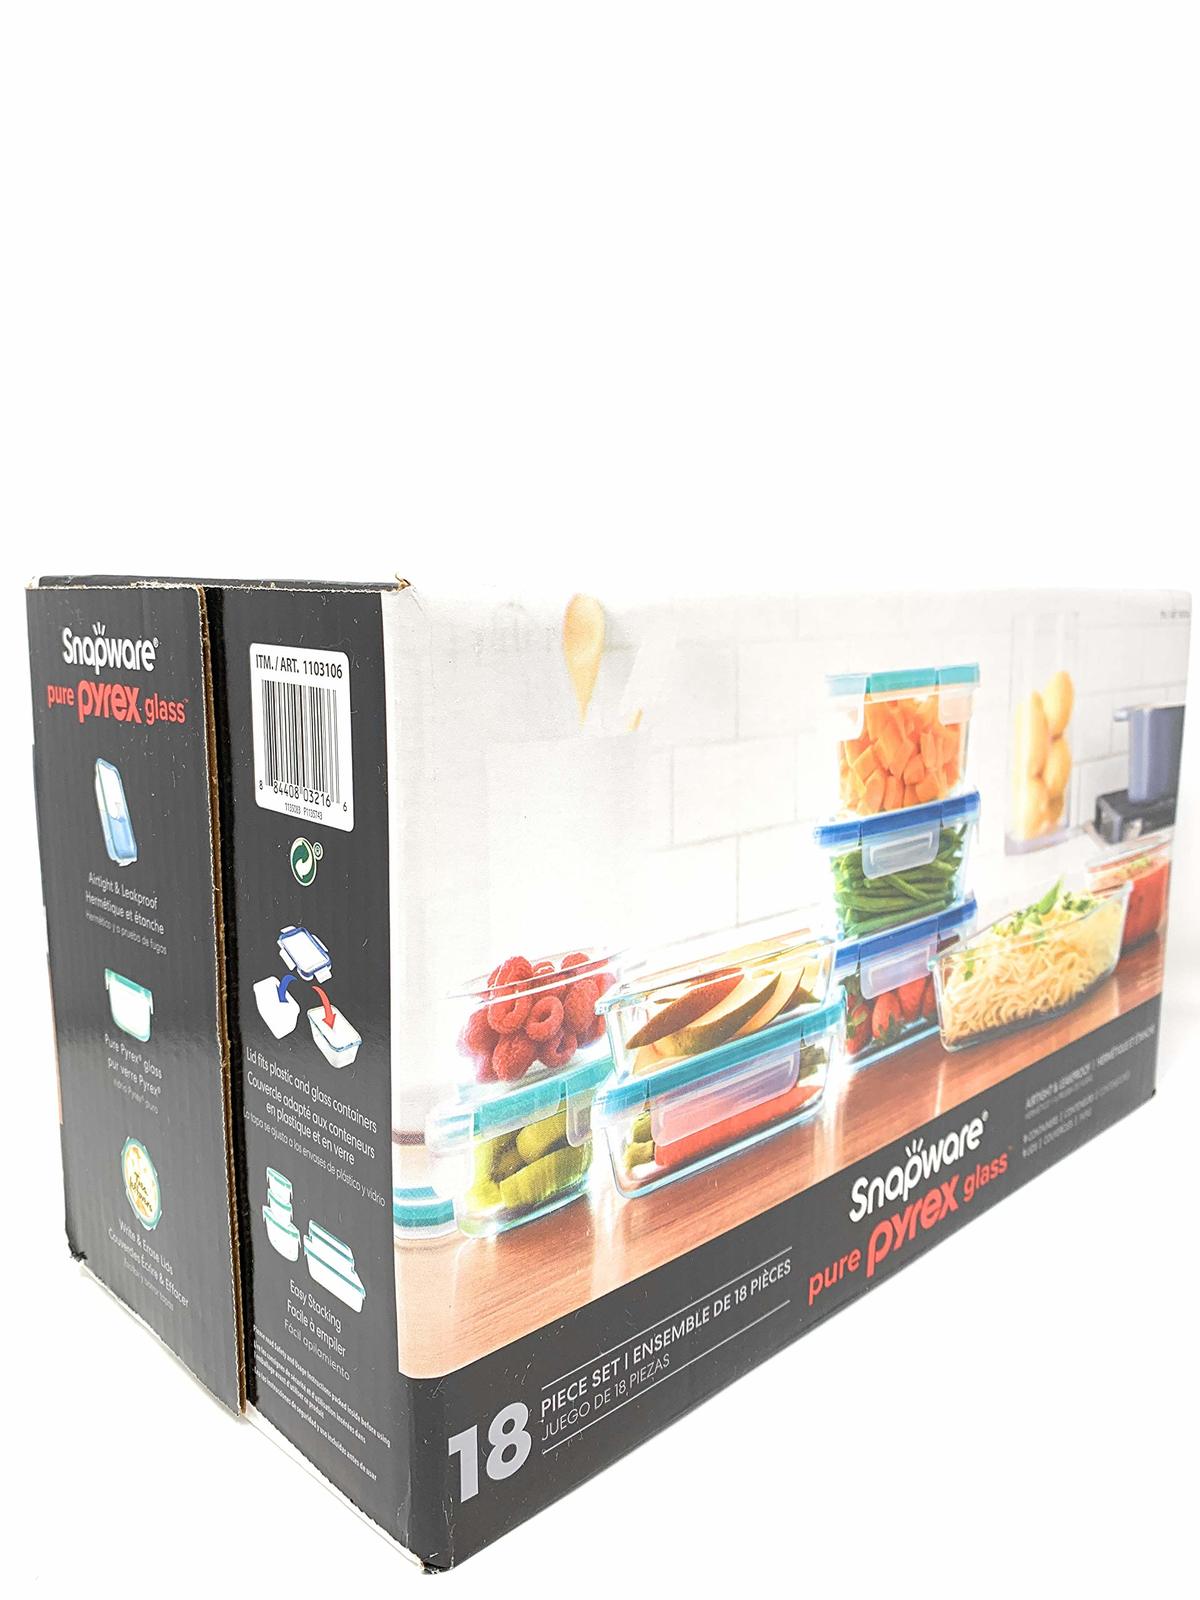 Snapware Pyrex 18-Piece Glass Food Storage Set W/ Lids